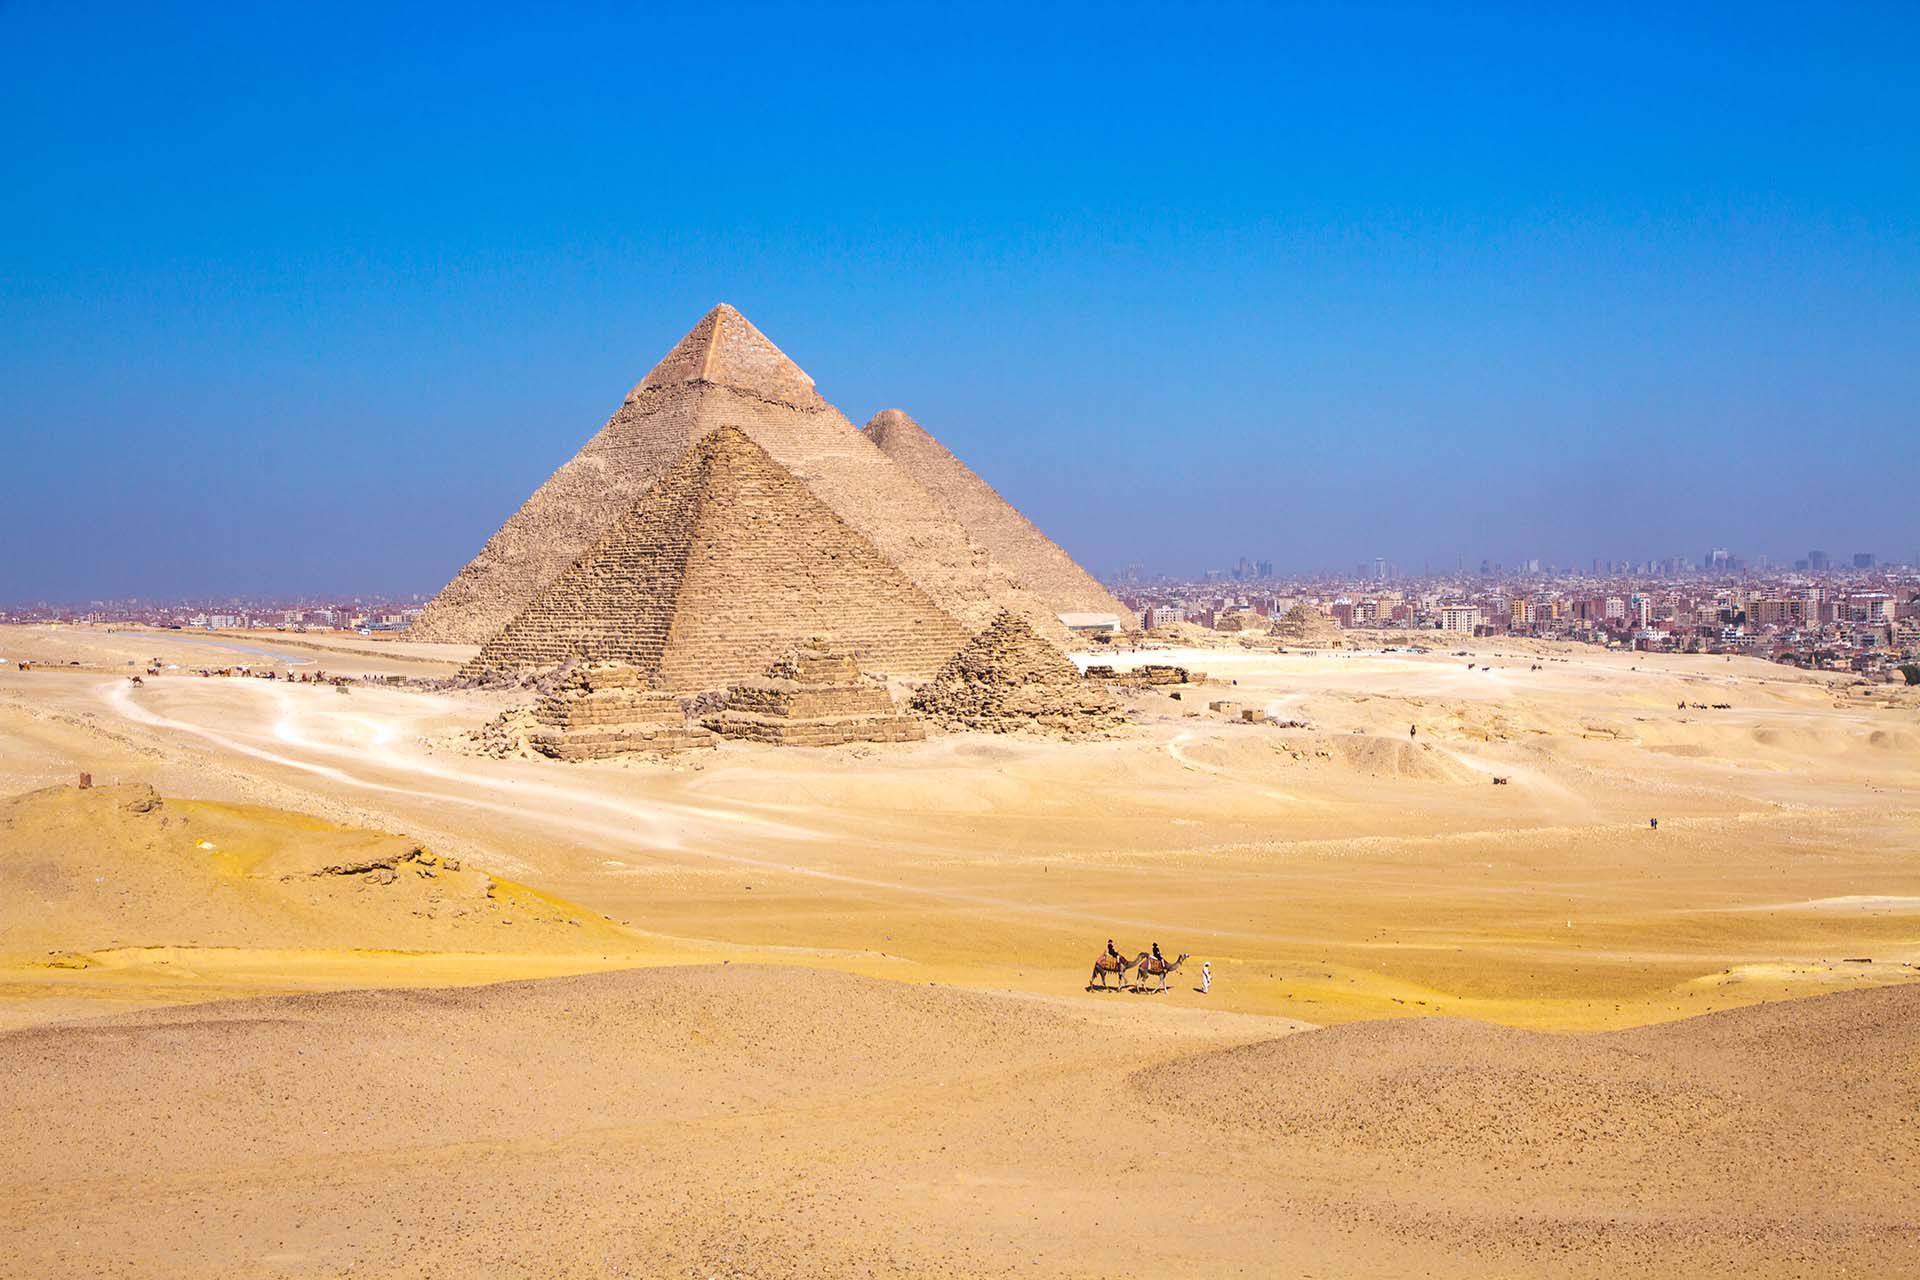 Egipto te da la bienvenida con su poderoso Nilo y sus magníficos monumentos, el cautivador desierto y el delta exuberante, y con su pasado largo y acogedor. La gente está empezando a regresar a un lugar que ha sido sinónimo de viajes culturales desde la época clásica